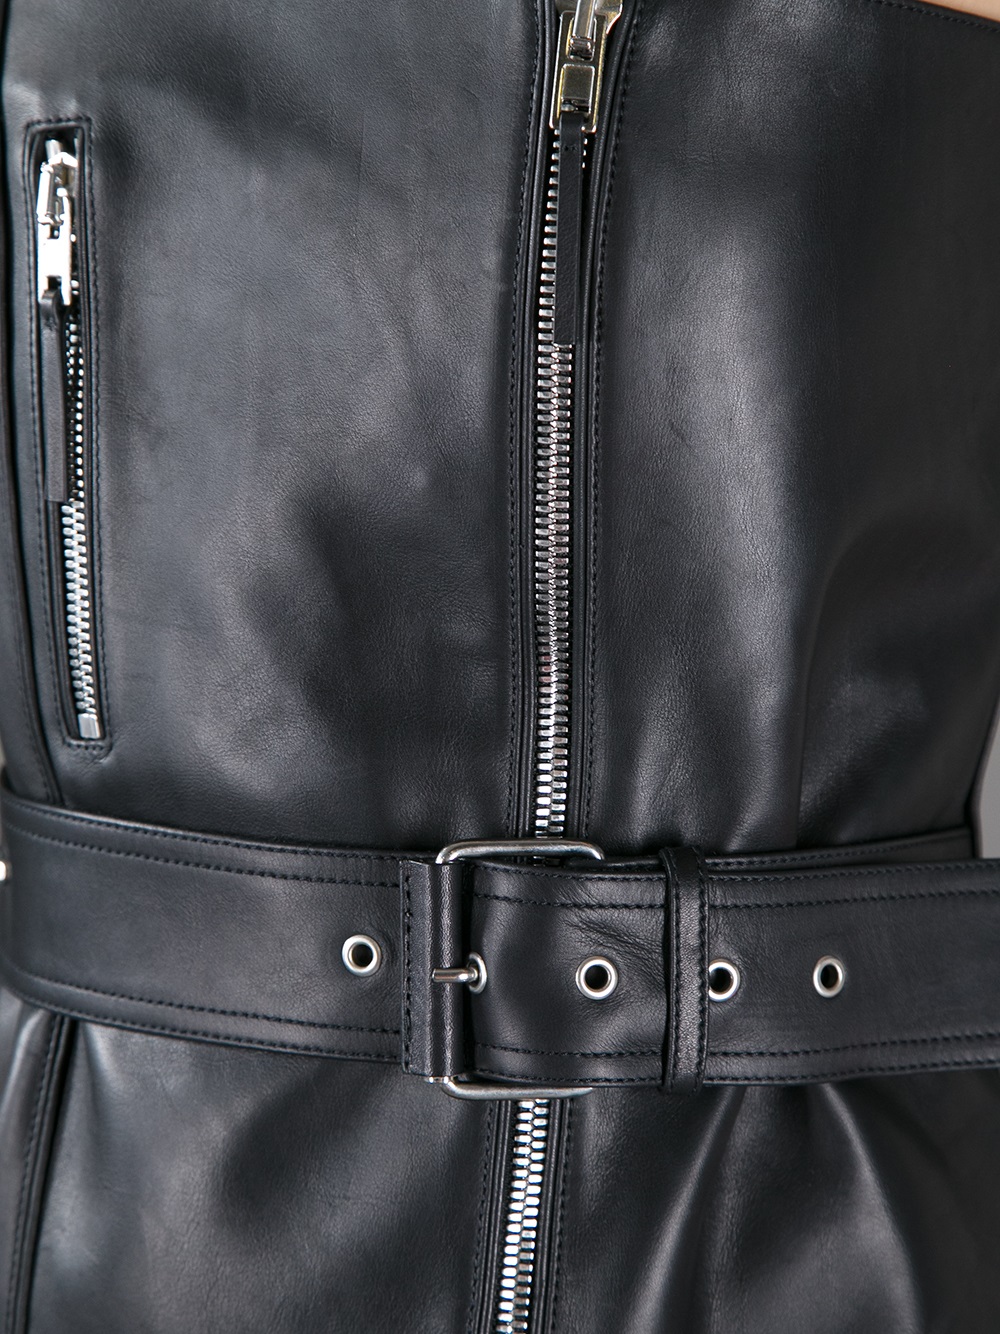 Jean Paul Gaultier Leather Bustier in Black - Lyst